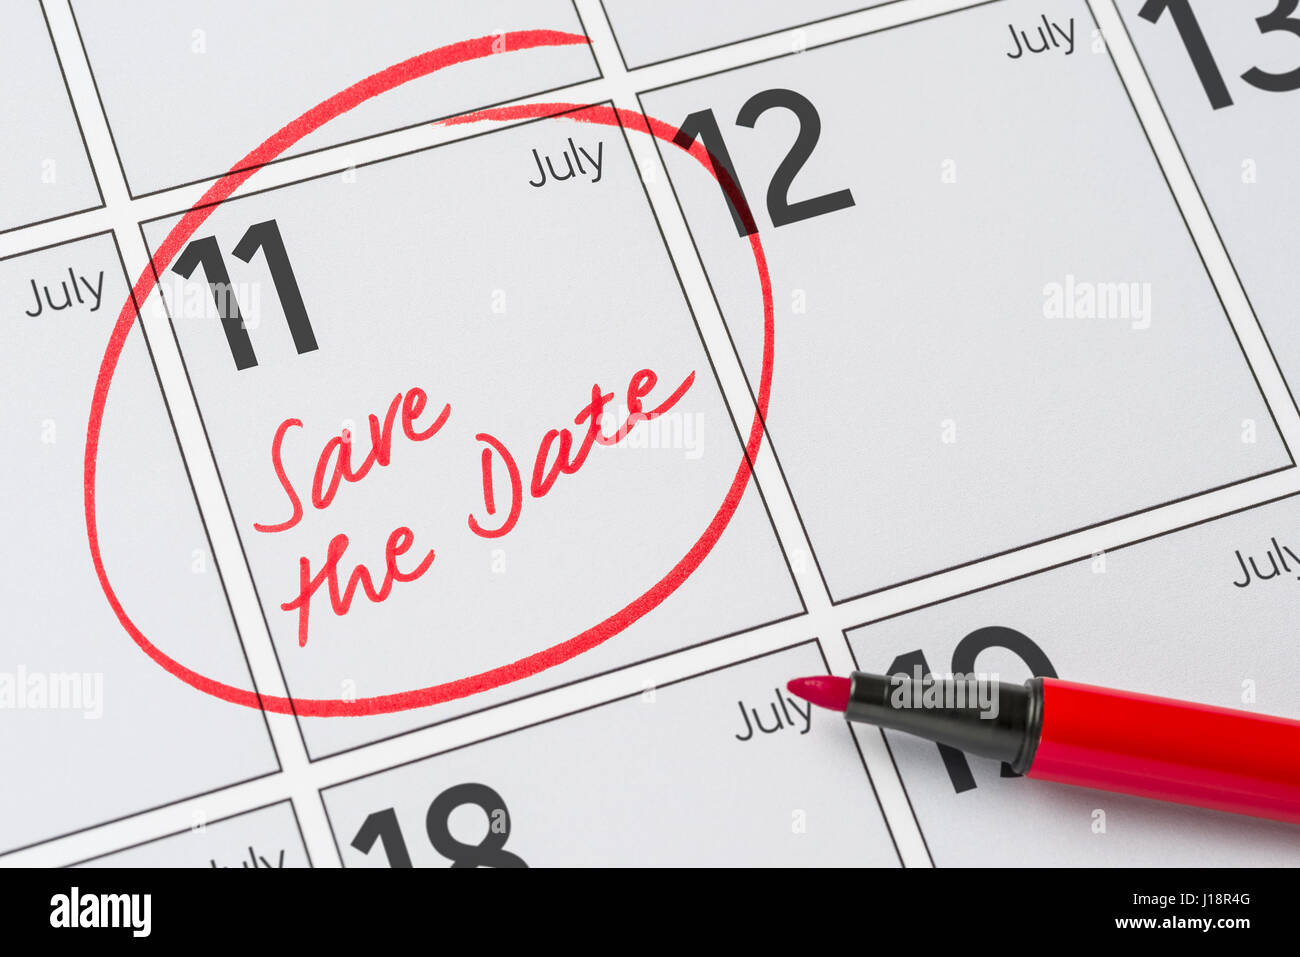 Enregistrer la date inscrite sur un calendrier - Juillet 11 Banque D'Images